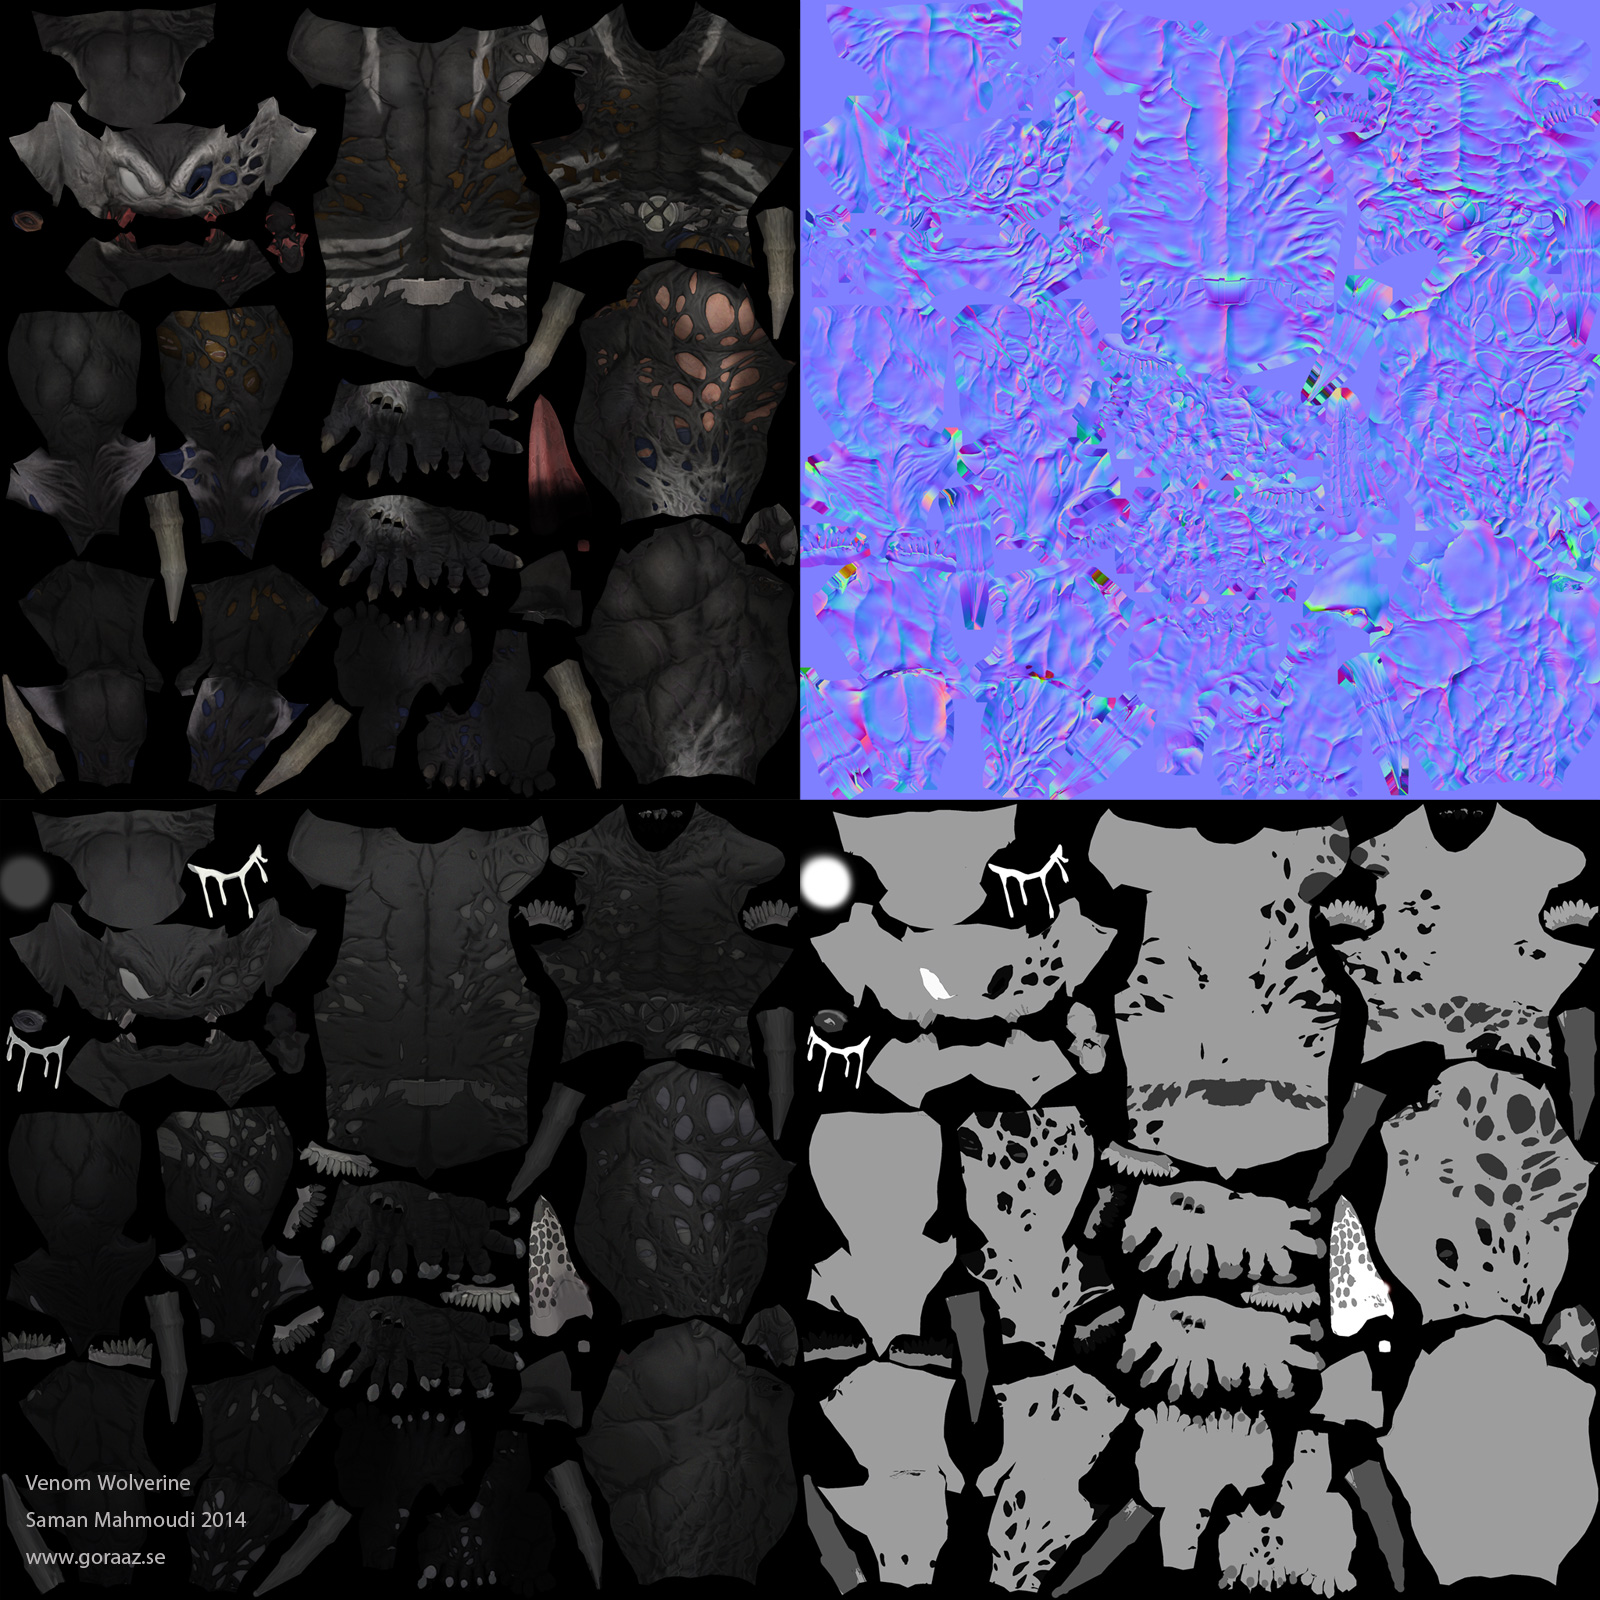 Wolverine_TexturePresentation.jpg